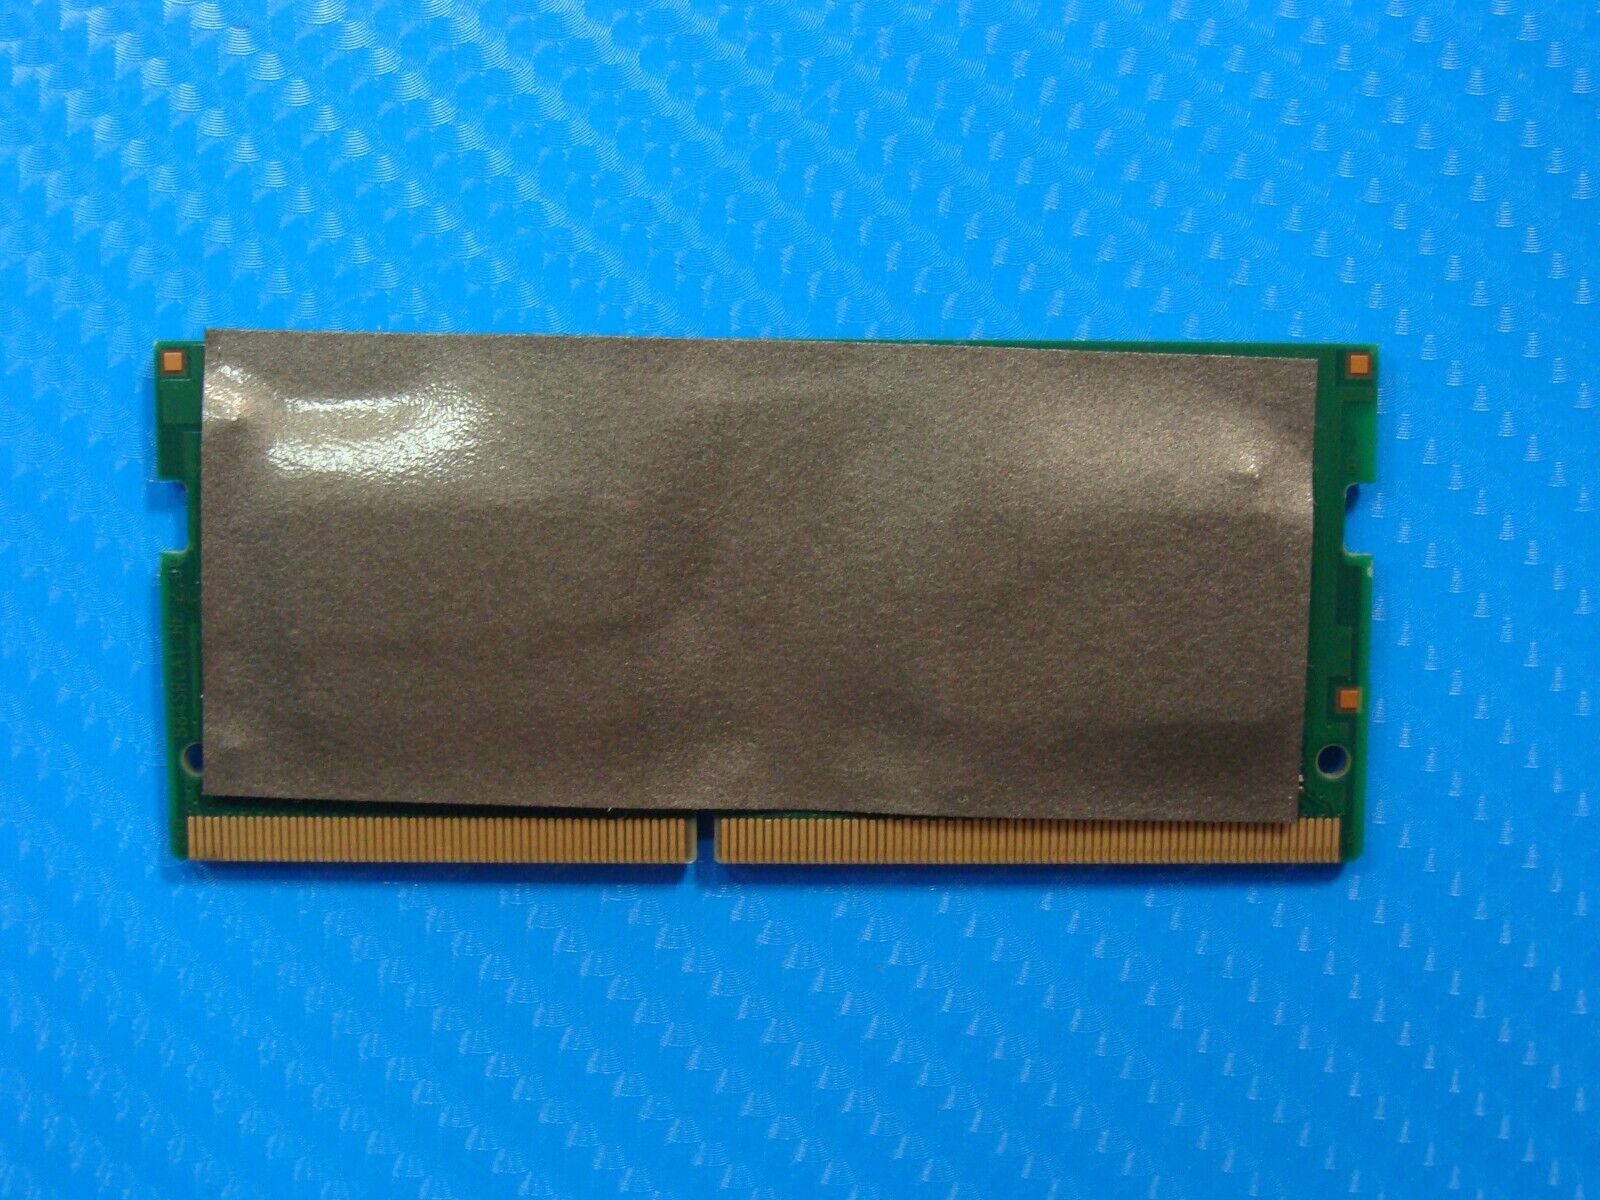 HP 14m-cd0003dx ADATA 8GB 1Rx8 PC4-2400T SO-DIMM Memory RAM AO1P24HC8T1-BPGS